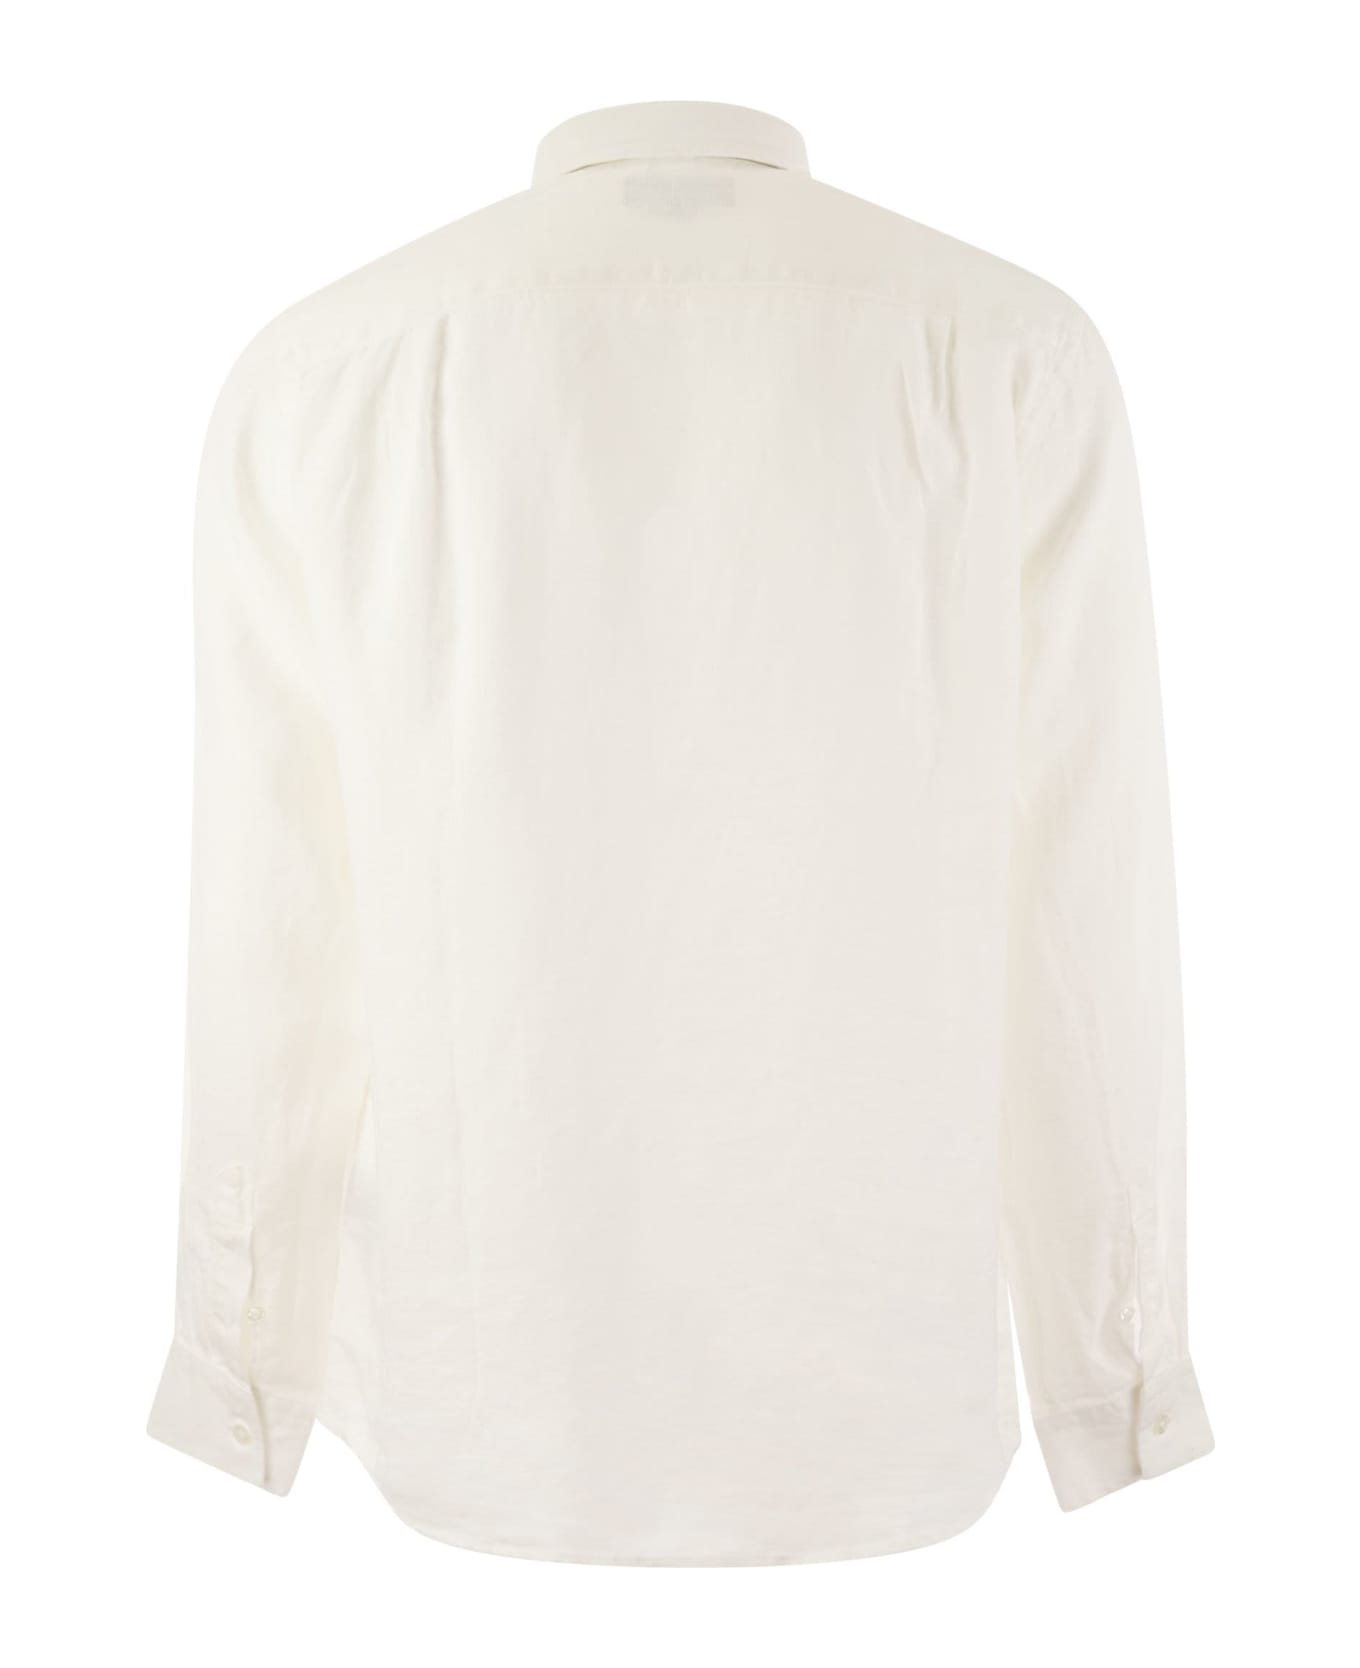 Vilebrequin Long-sleeved Linen Shirt - White シャツ